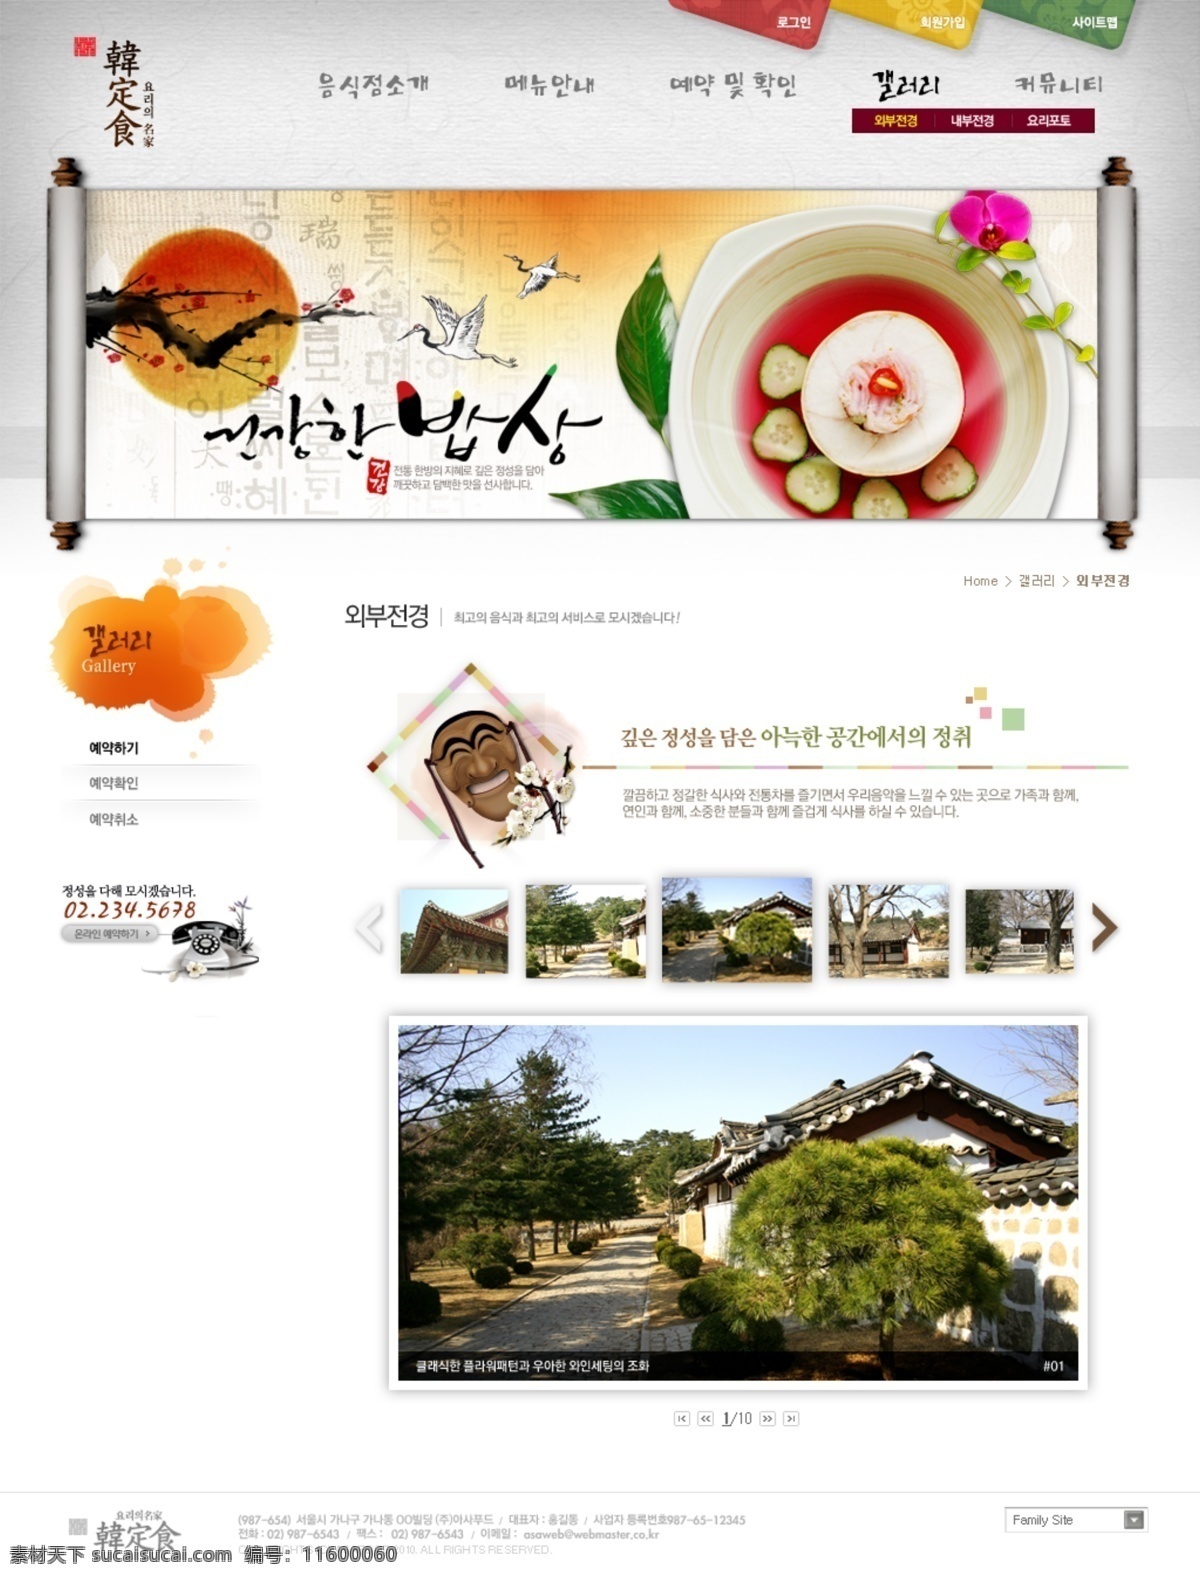 韩式 饮食 人文 网站 饮食文化 风景 模版 网页素材 网页模板